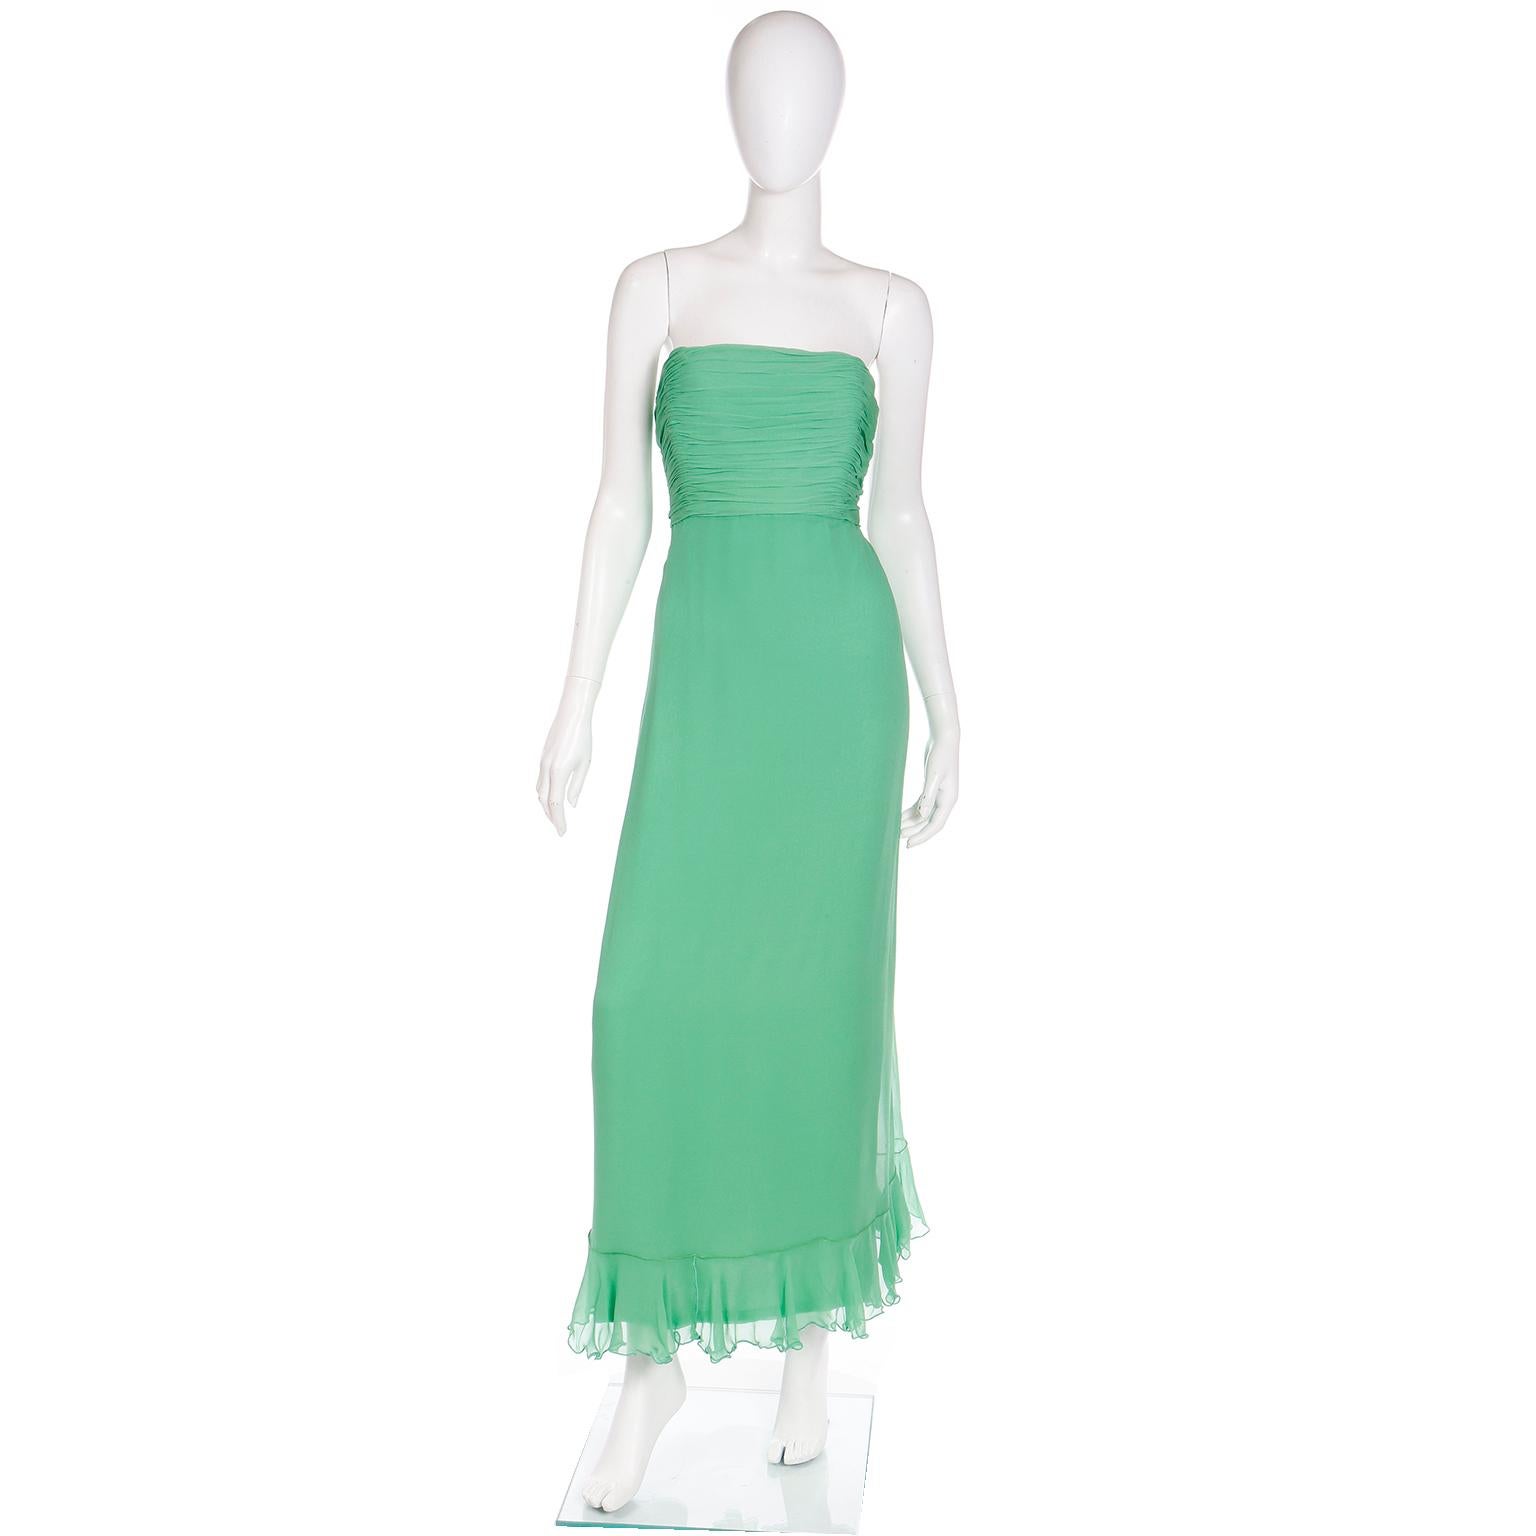 Cette élégante robe longue en mousseline de soie verte de Wayne Clark a été achetée dans la boutique de couture Harriet Kassman à Washington DC. La robe est sans bretelles avec un corsage froncé et elle est accompagnée d'un châle à volants qui peut